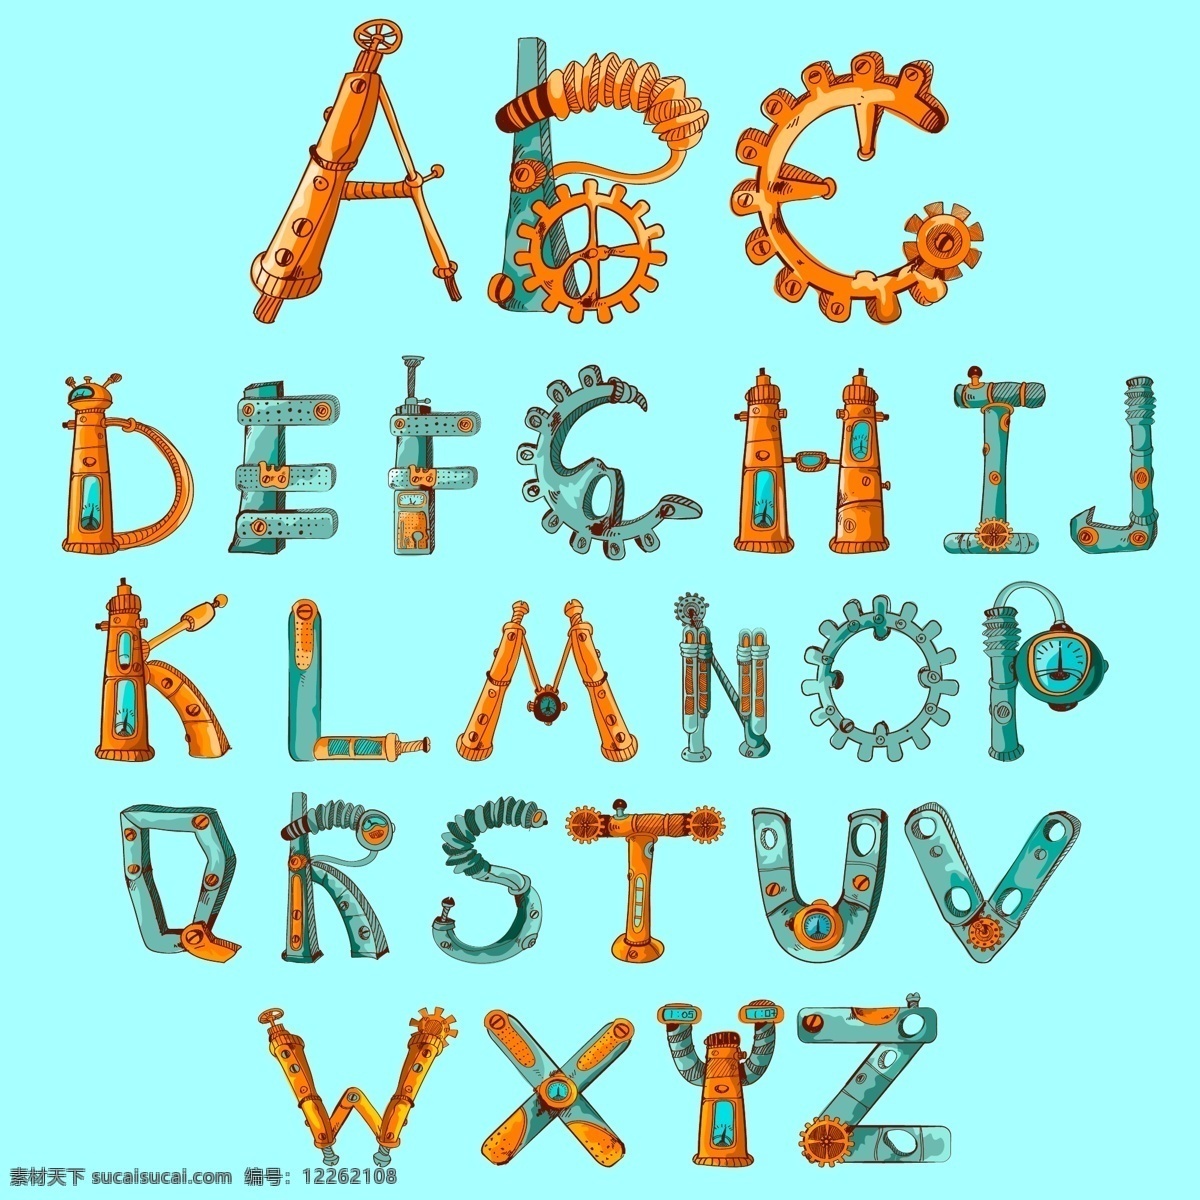 机械文字 英文字母 机械字母 设计素材 学习用品 大写字母 创意文字 文字设计 手绘字母 英语 背景图片 学生用品 生活百科